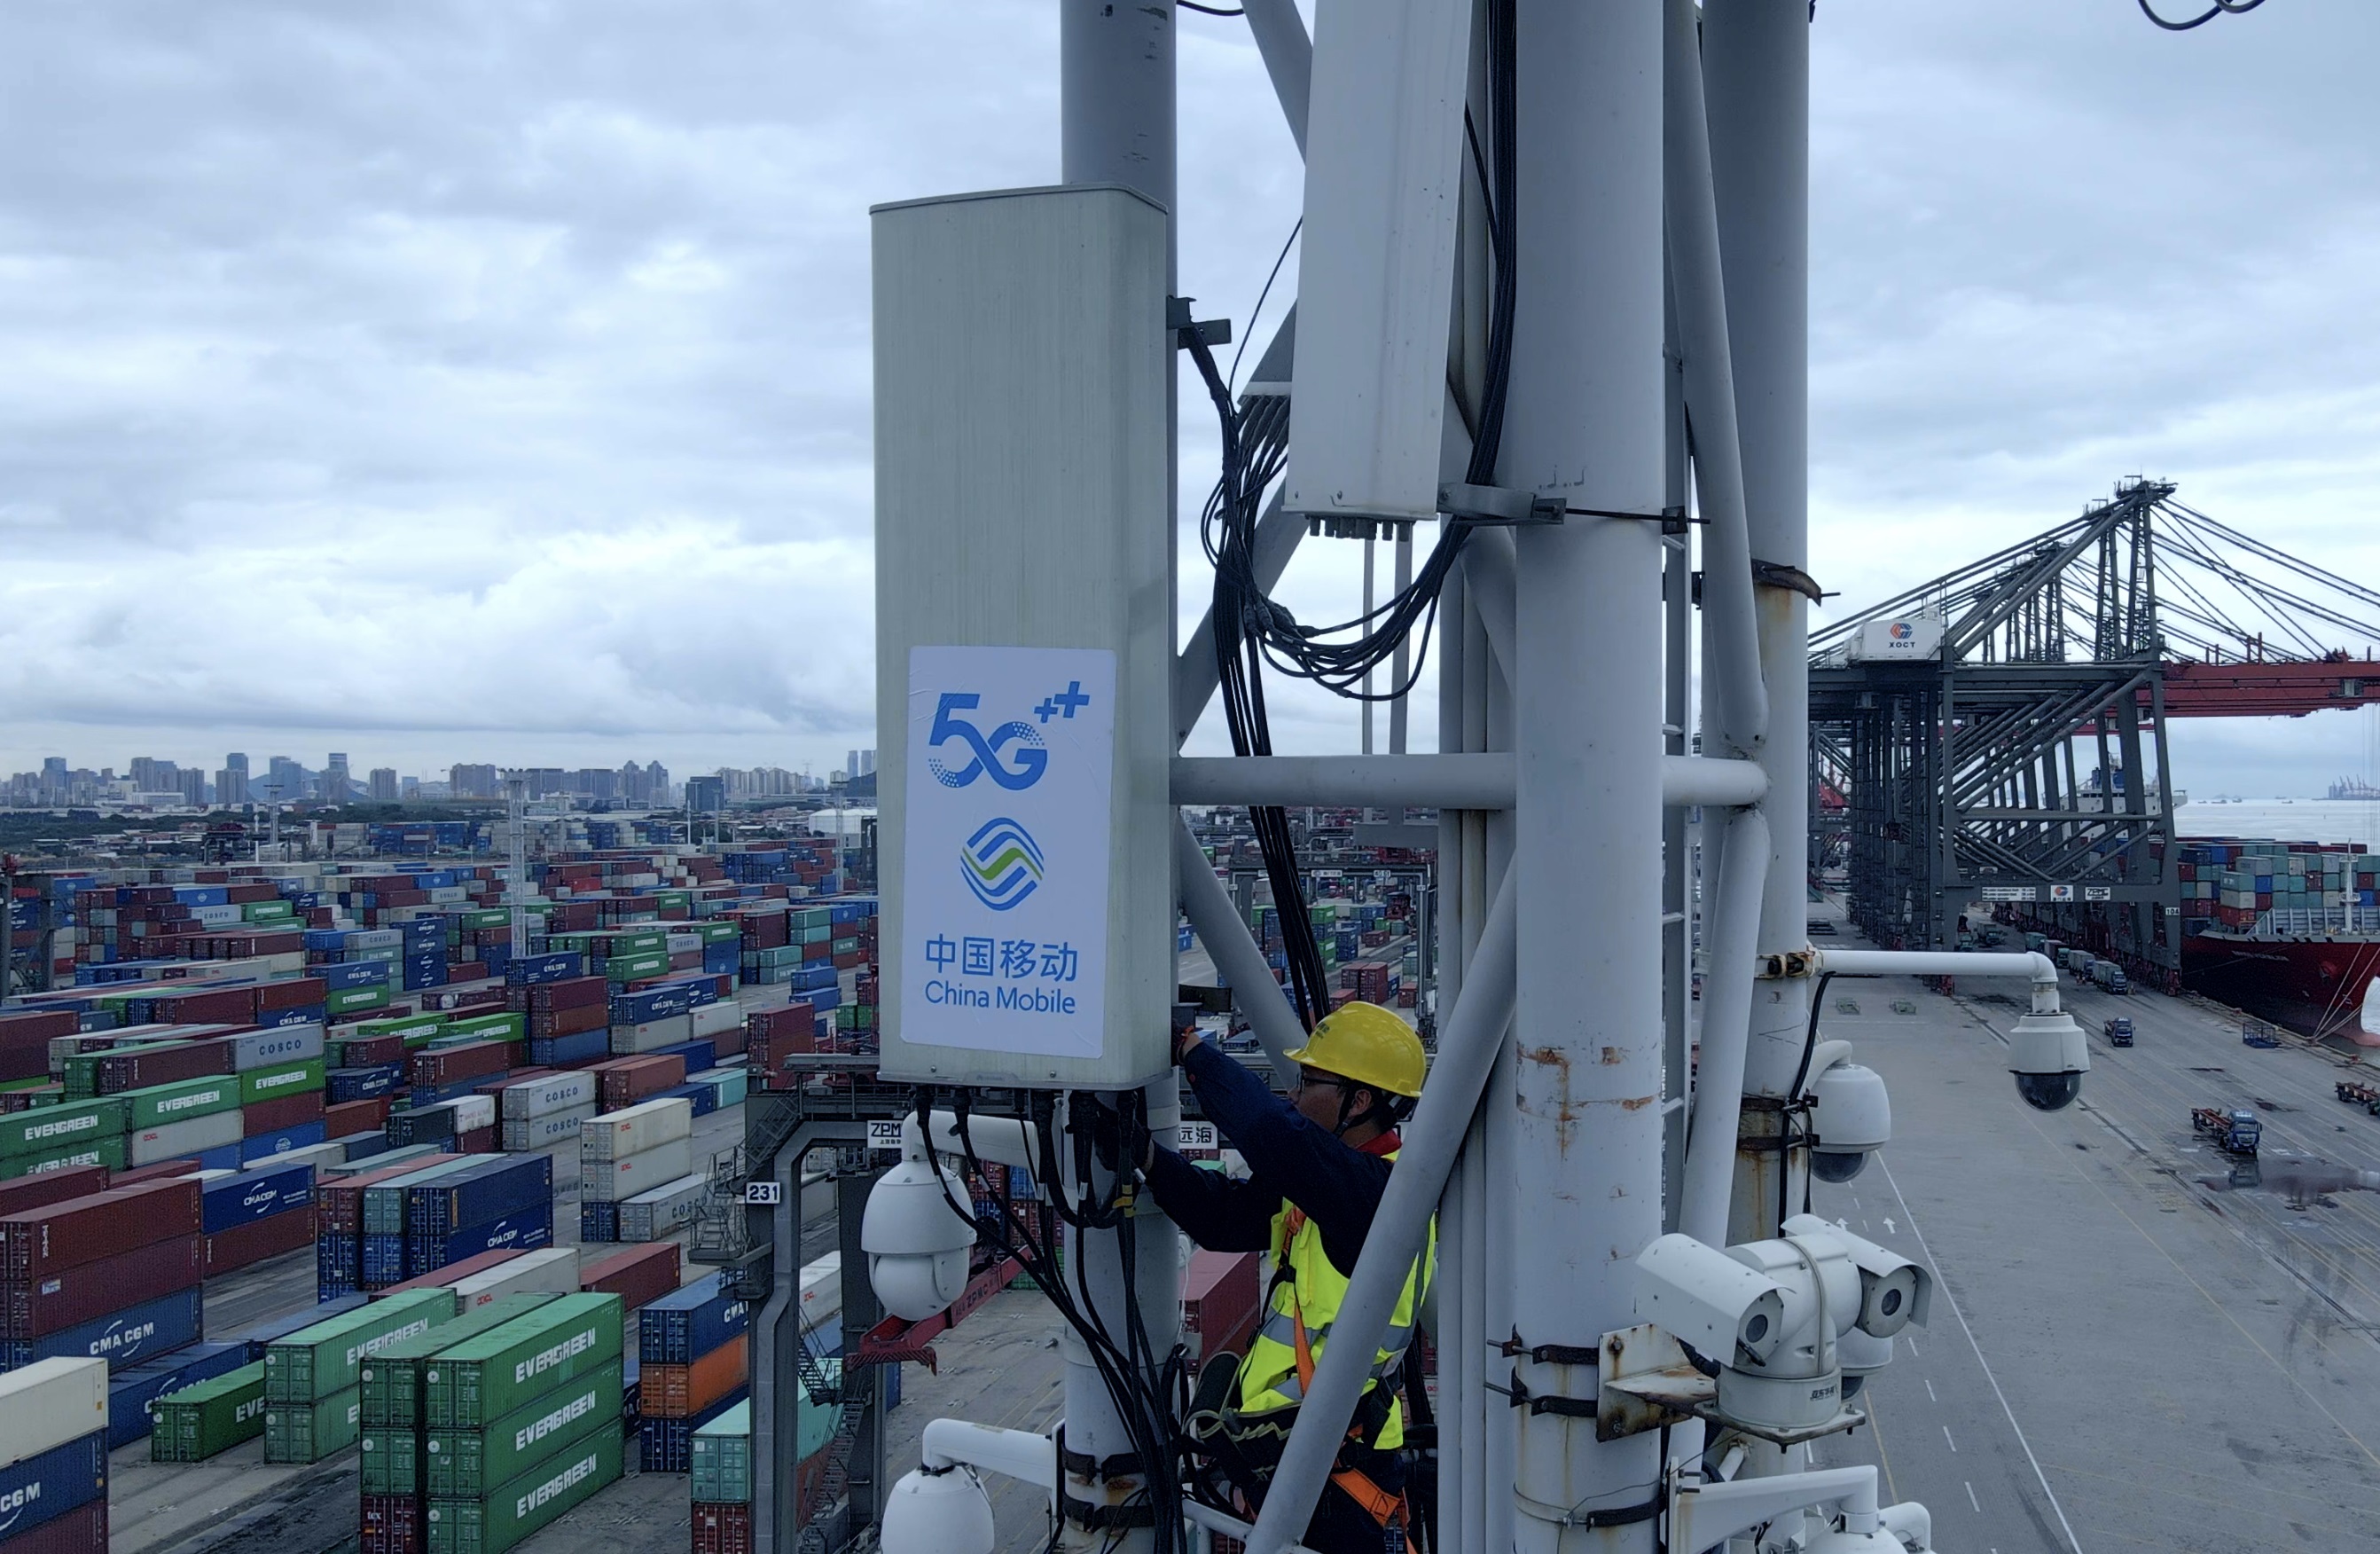 青岛移动5G基站助力智慧港口建设。